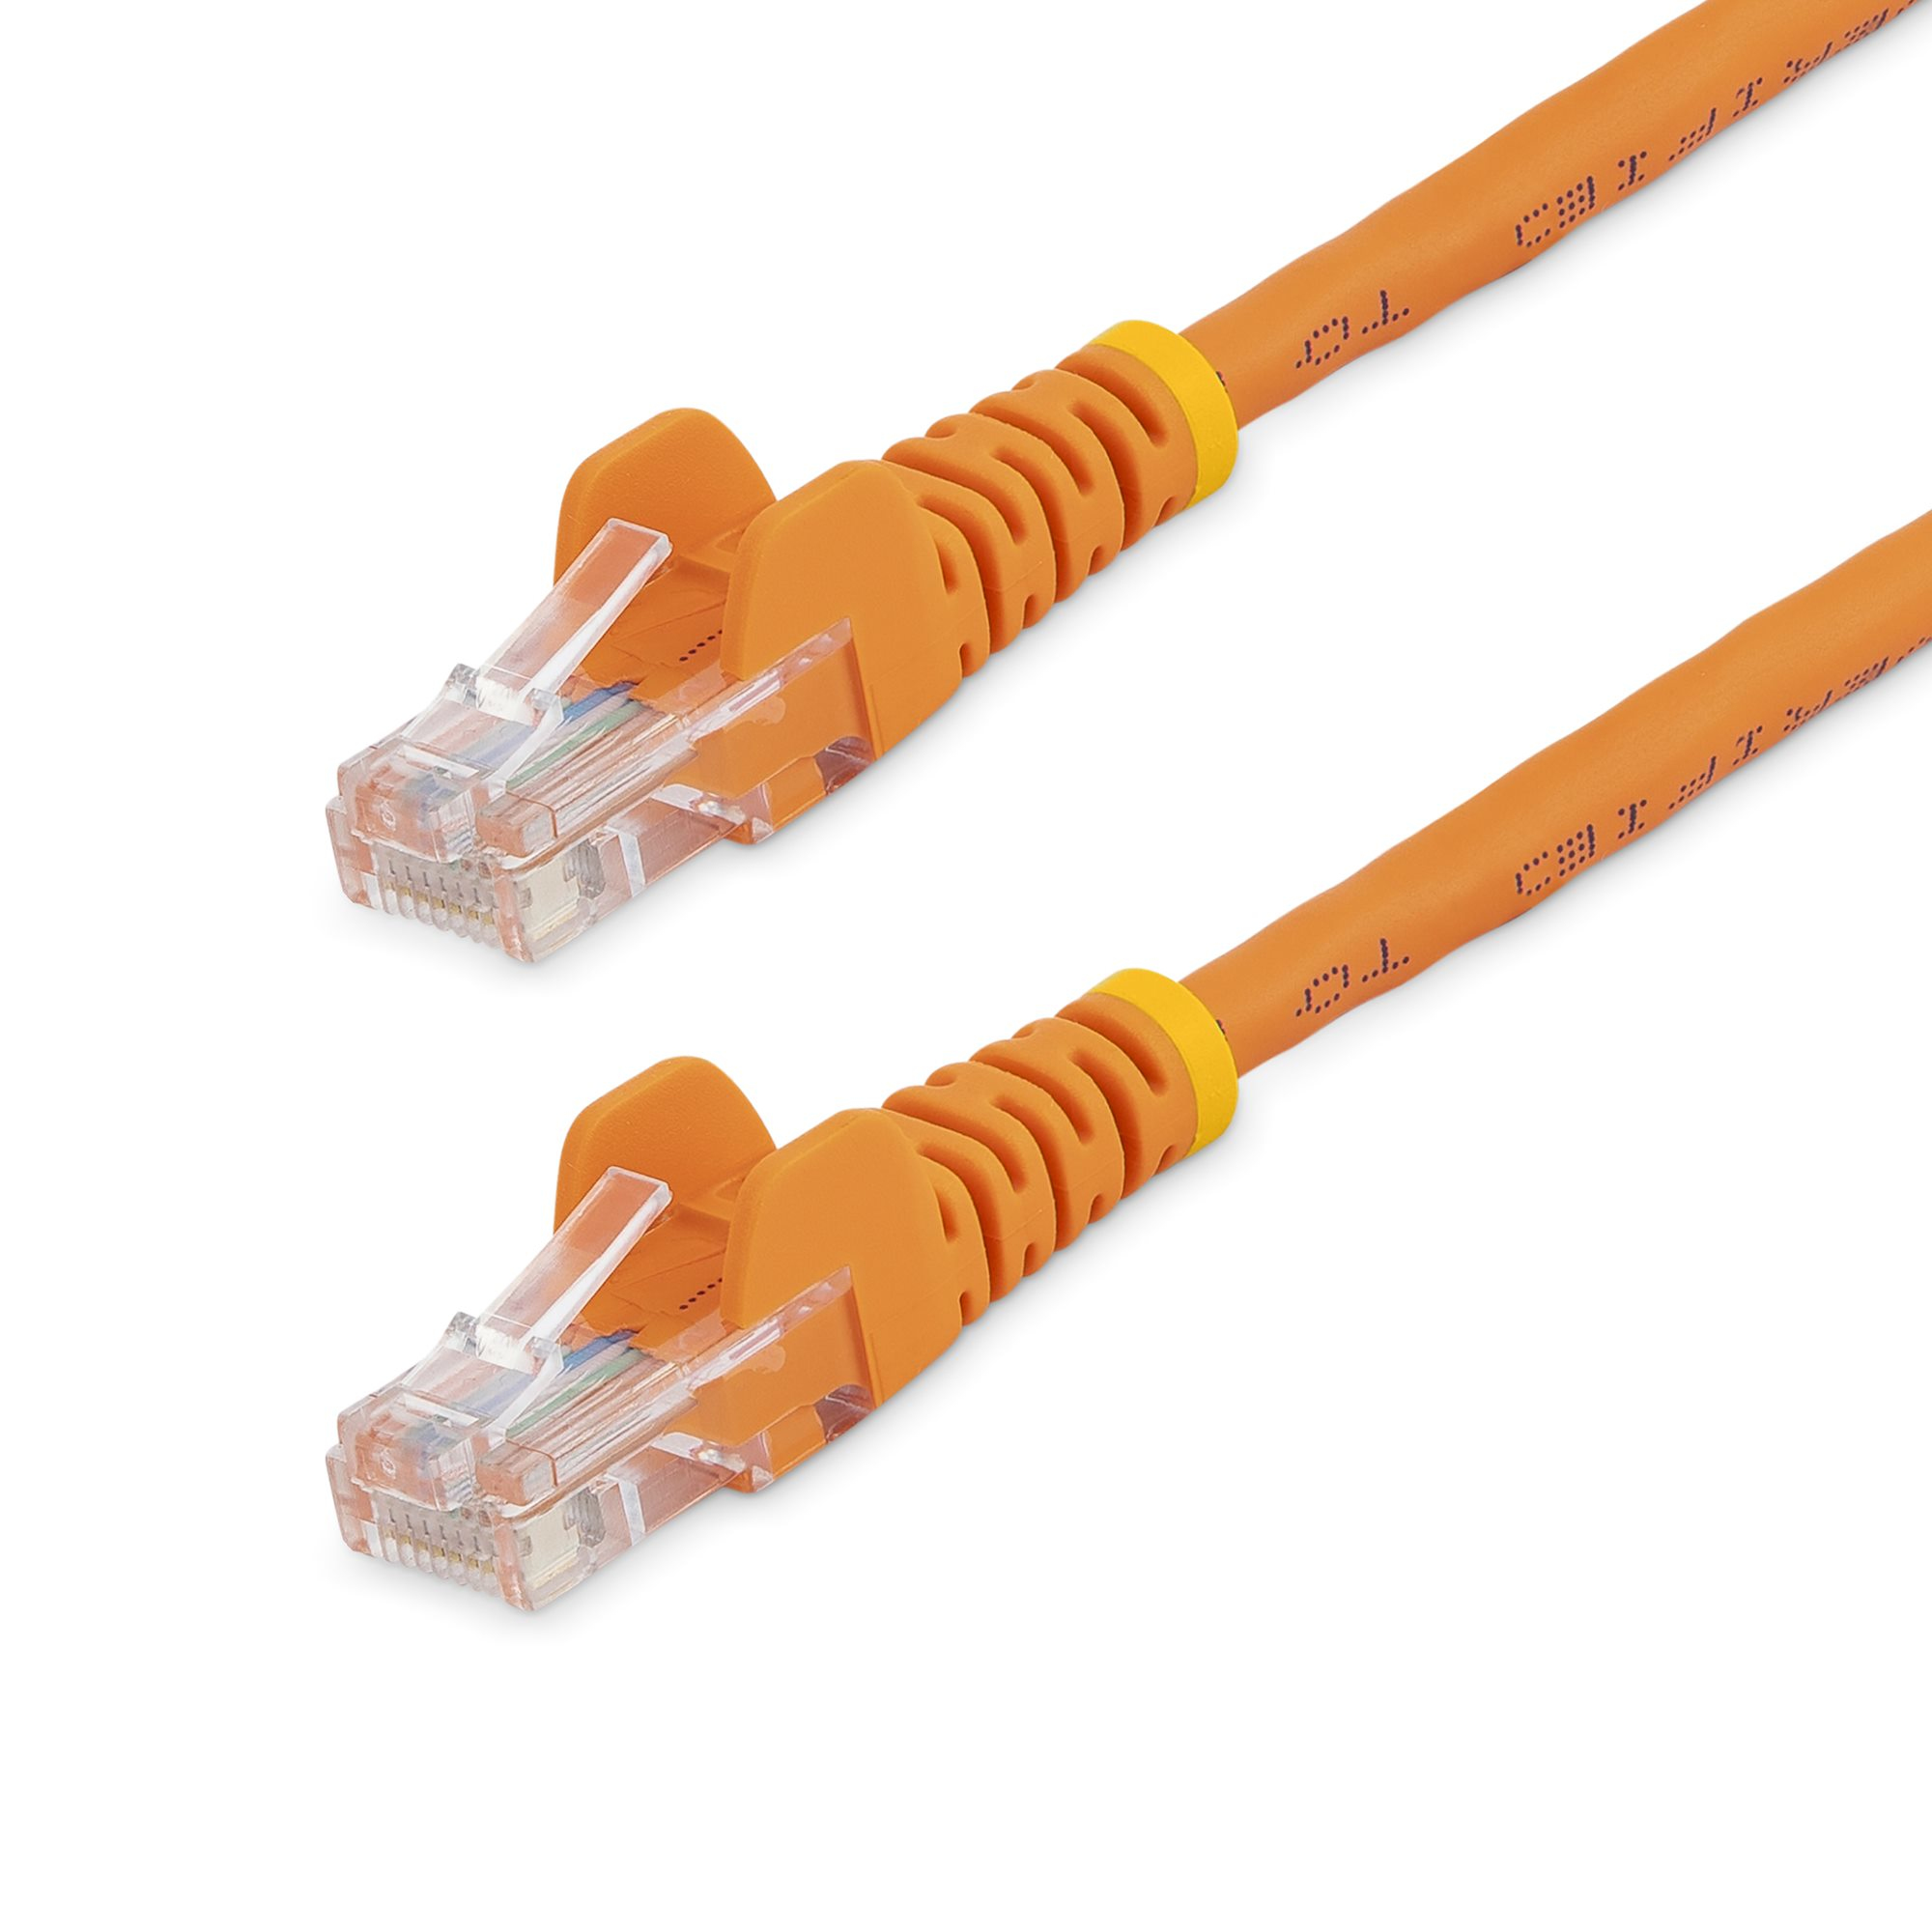 StarTech.com 0,5m Cat5e Ethernet Netzwerkkabel Snagless mit RJ45 - Cat 5e UTP Kabel - Orange - Patch-Kabel - RJ-45 (M)